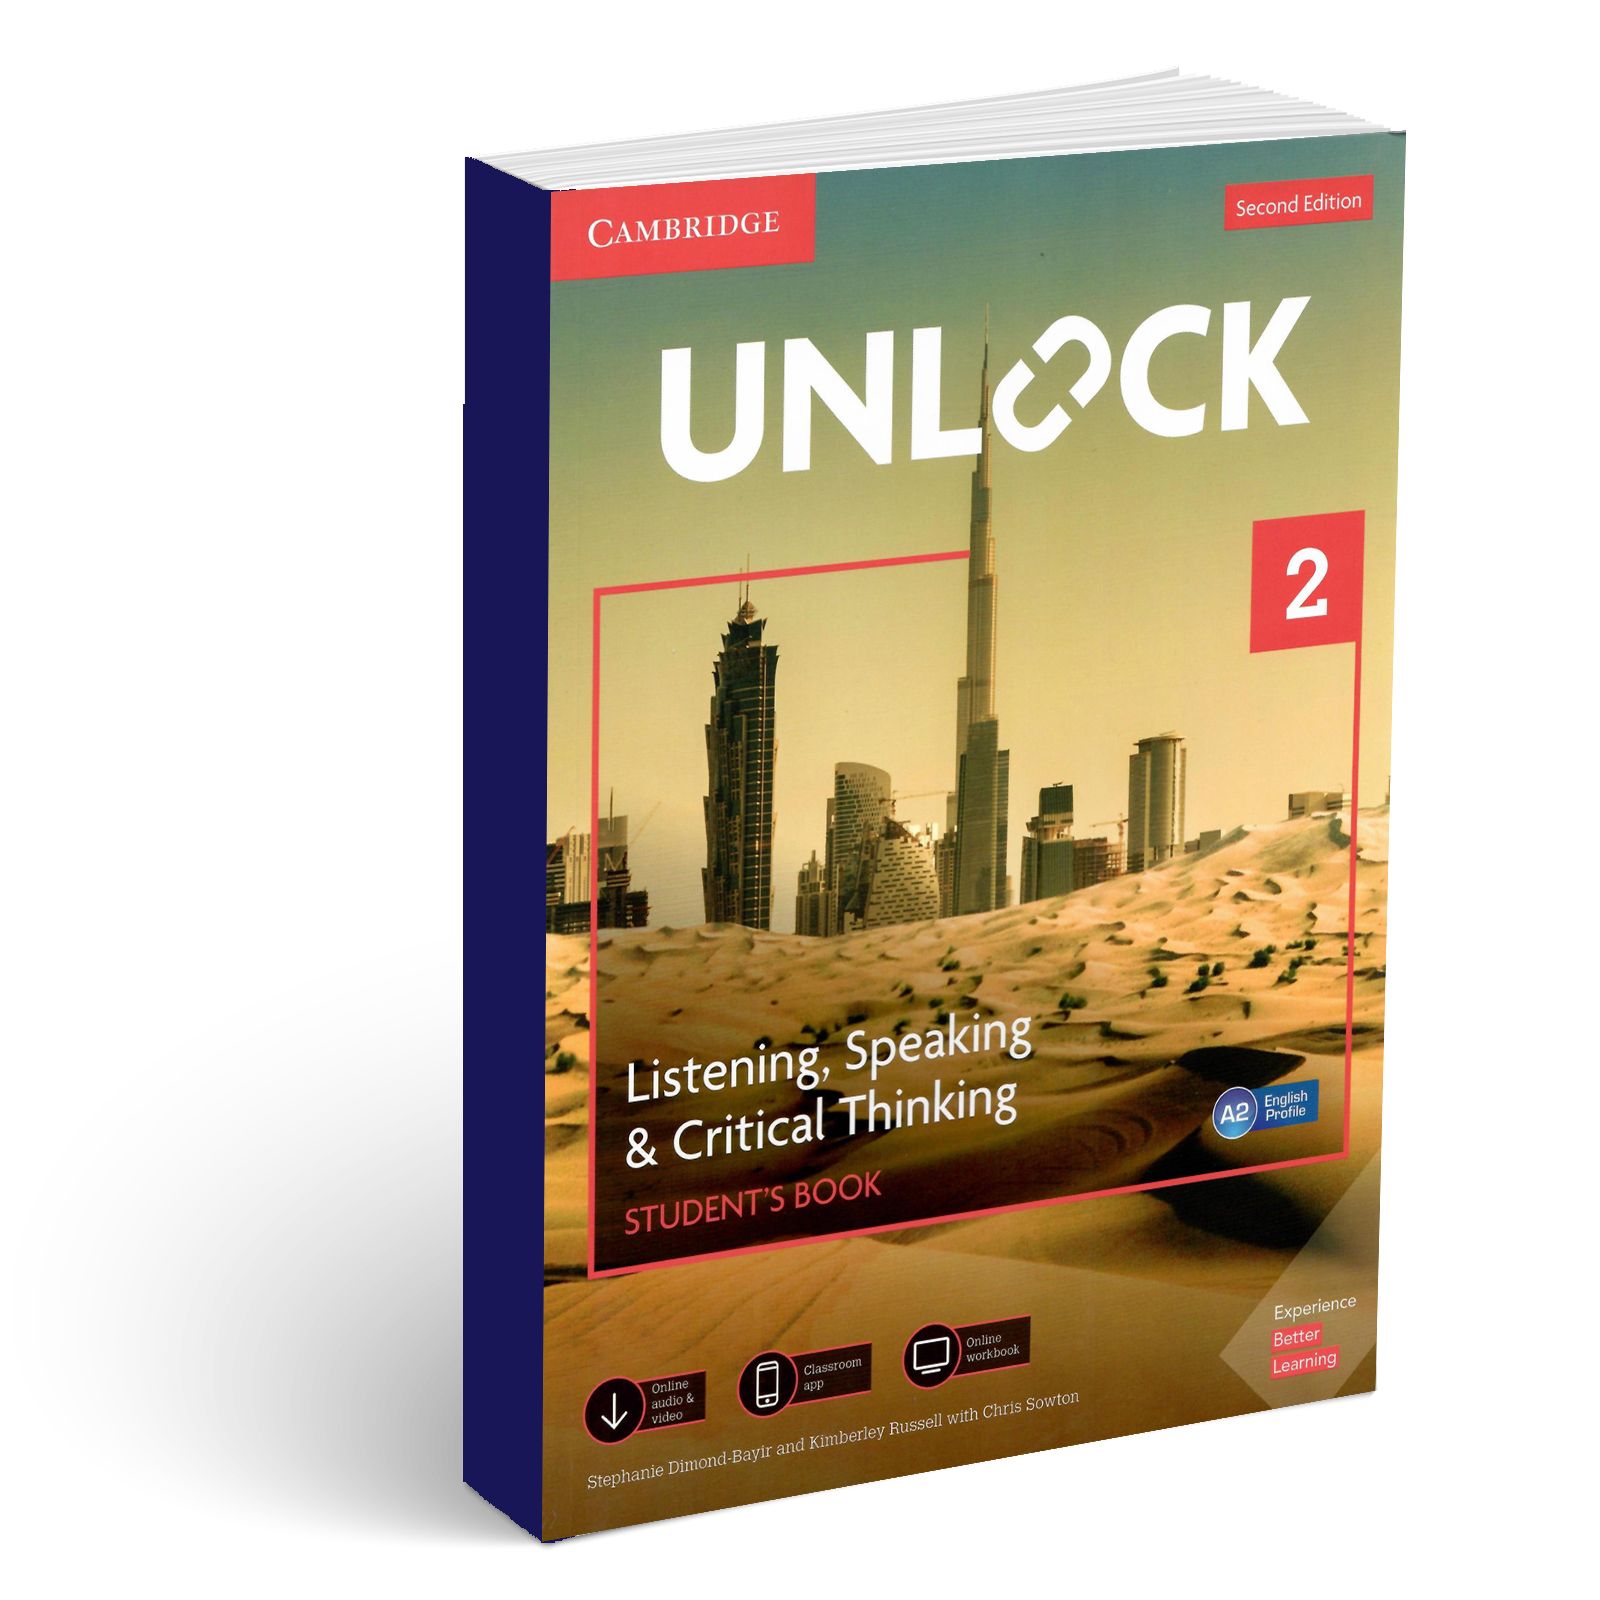 по　OZON　Book　Listening,　купить　ценам　в　интернет-магазине　Edition　Critical　выгодным　Thinking　Student's　доставкой　Level　с　Speaking　Unlock　(832360542)